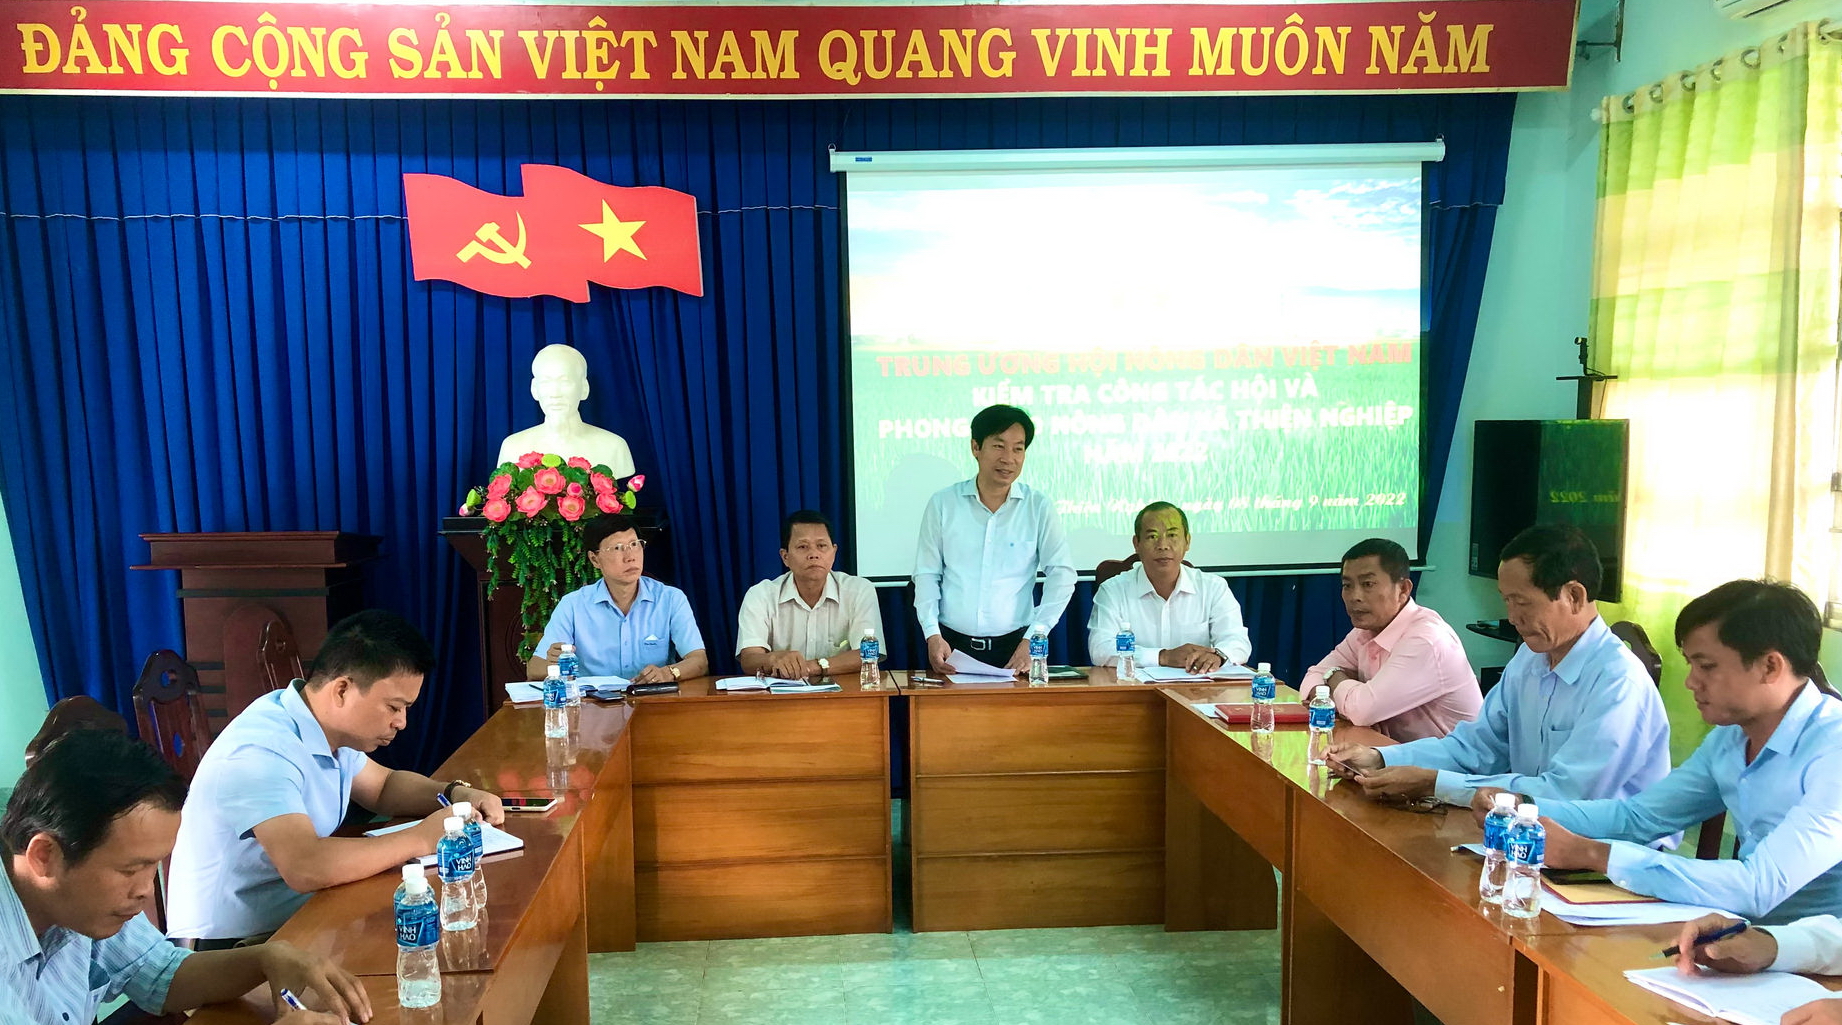 Bình Thuận: Hội Nông dân phối hợp cùng ngân hàng hỗ trợ cho nông dân vay vốn gần 3.800 tỷ đồng sản xuất nông nghiệp - Ảnh 1.